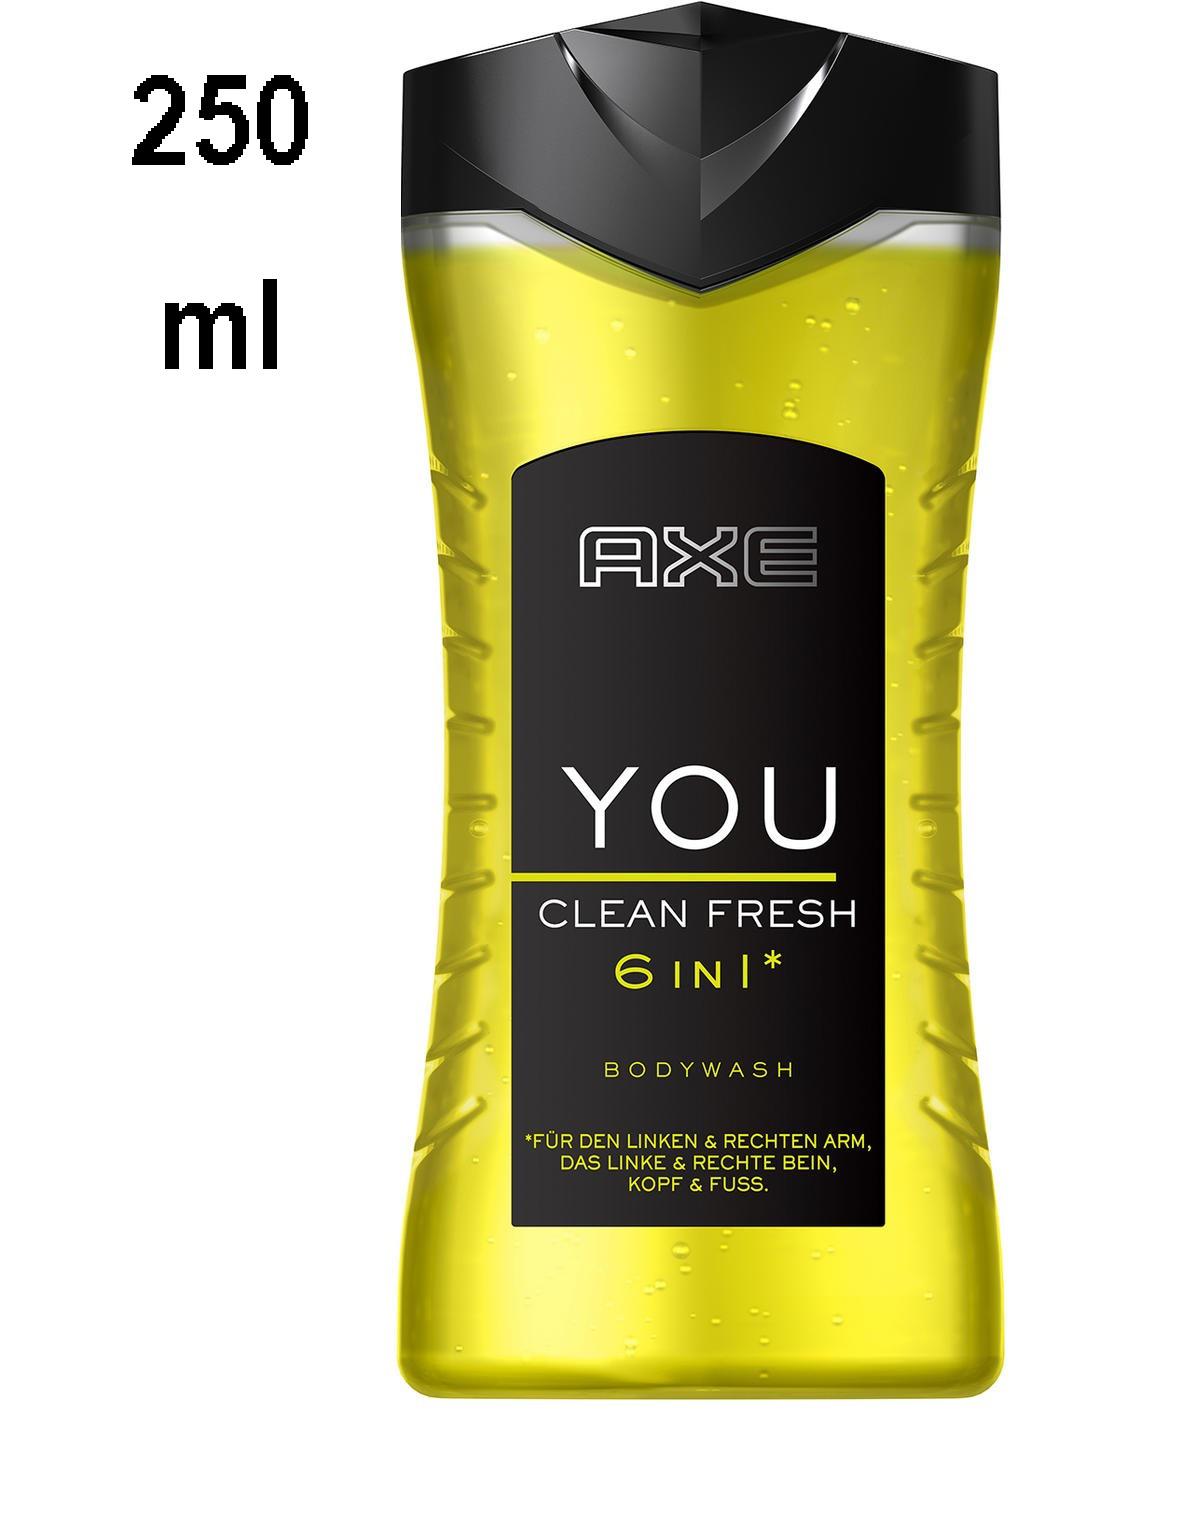 Onderdompeling investering naar voren gebracht Axe Men Shower Gel "You Clean Fresh" - 250 ml